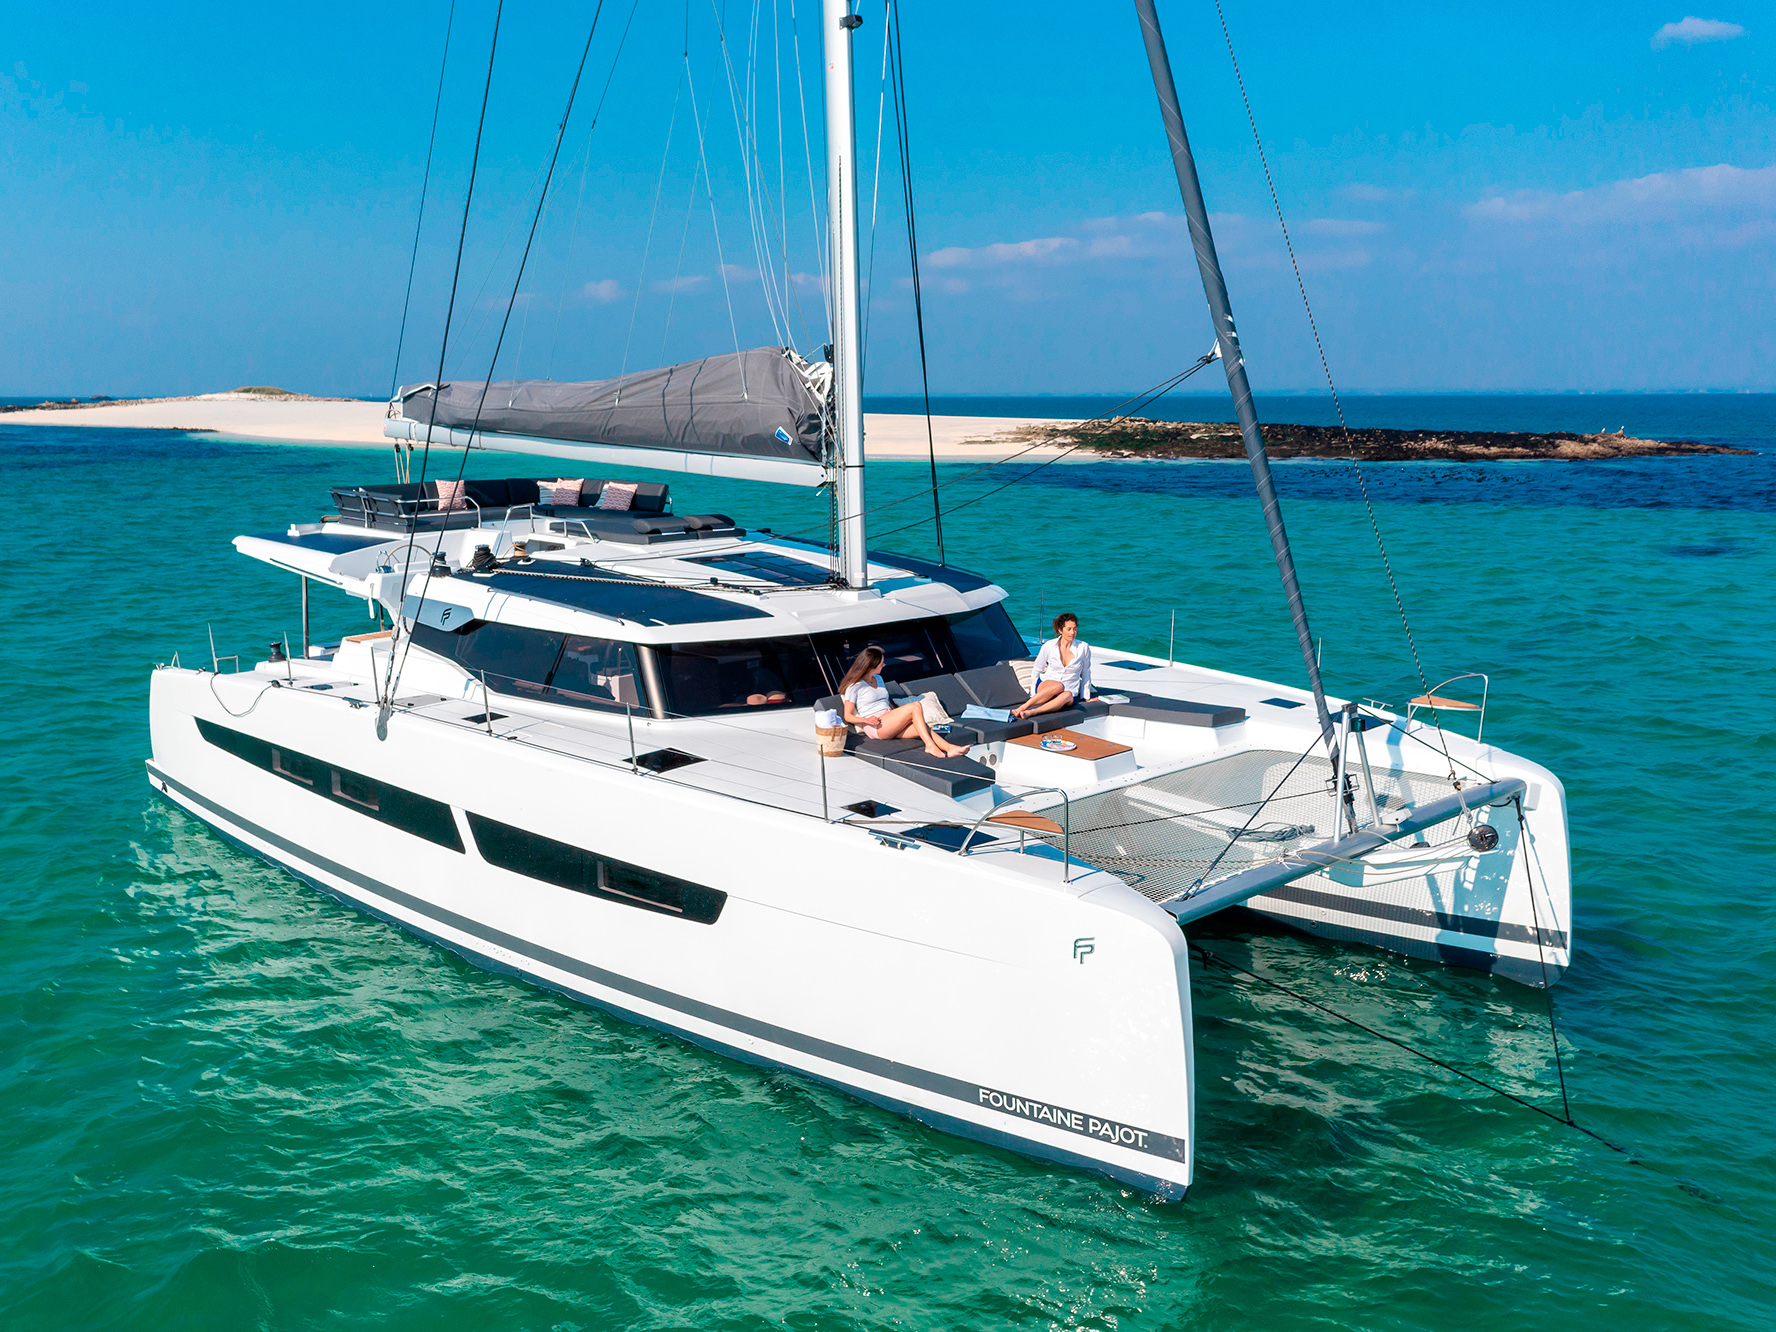 Aura 51 - Luxury yacht charter Sicily & Boat hire in Italy Sicily Aeolian Islands Capo d'Orlando Capo d'Orlando Marina 1